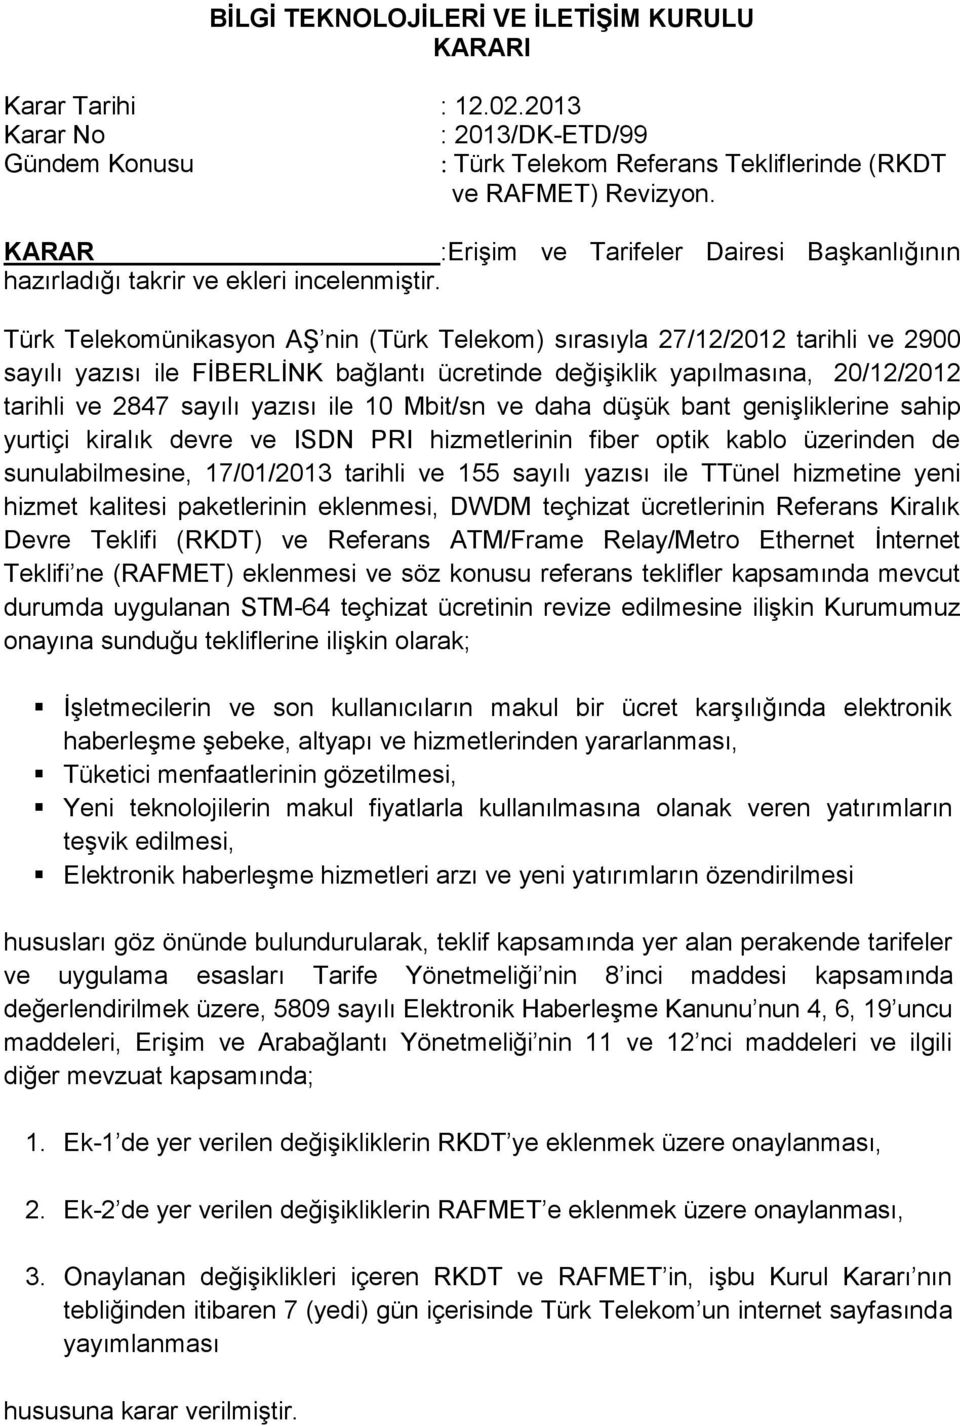 Türk Telekomünikasyon AŞ nin (Türk Telekom) sırasıyla 27/12/2012 tarihli ve 2900 sayılı yazısı ile FİBERLİNK bağlantı ücretinde değişiklik yapılmasına, 20/12/2012 tarihli ve 2847 sayılı yazısı ile 10